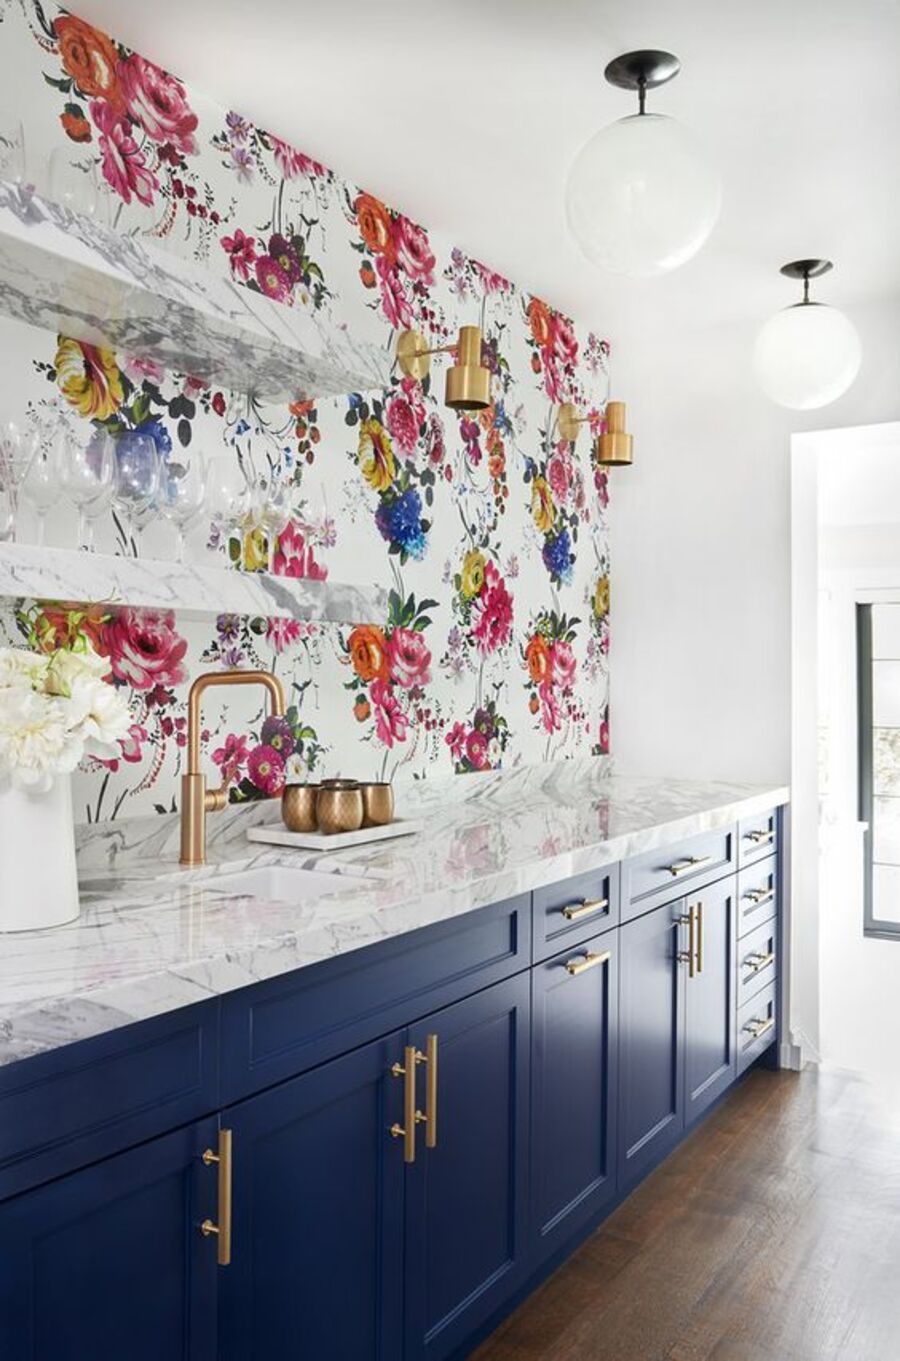 Cocina con papel mural de flores rosadas, rojas, amarillas y azules, mueble de cocina azul con cubierta de mármol y repisas de mármol.